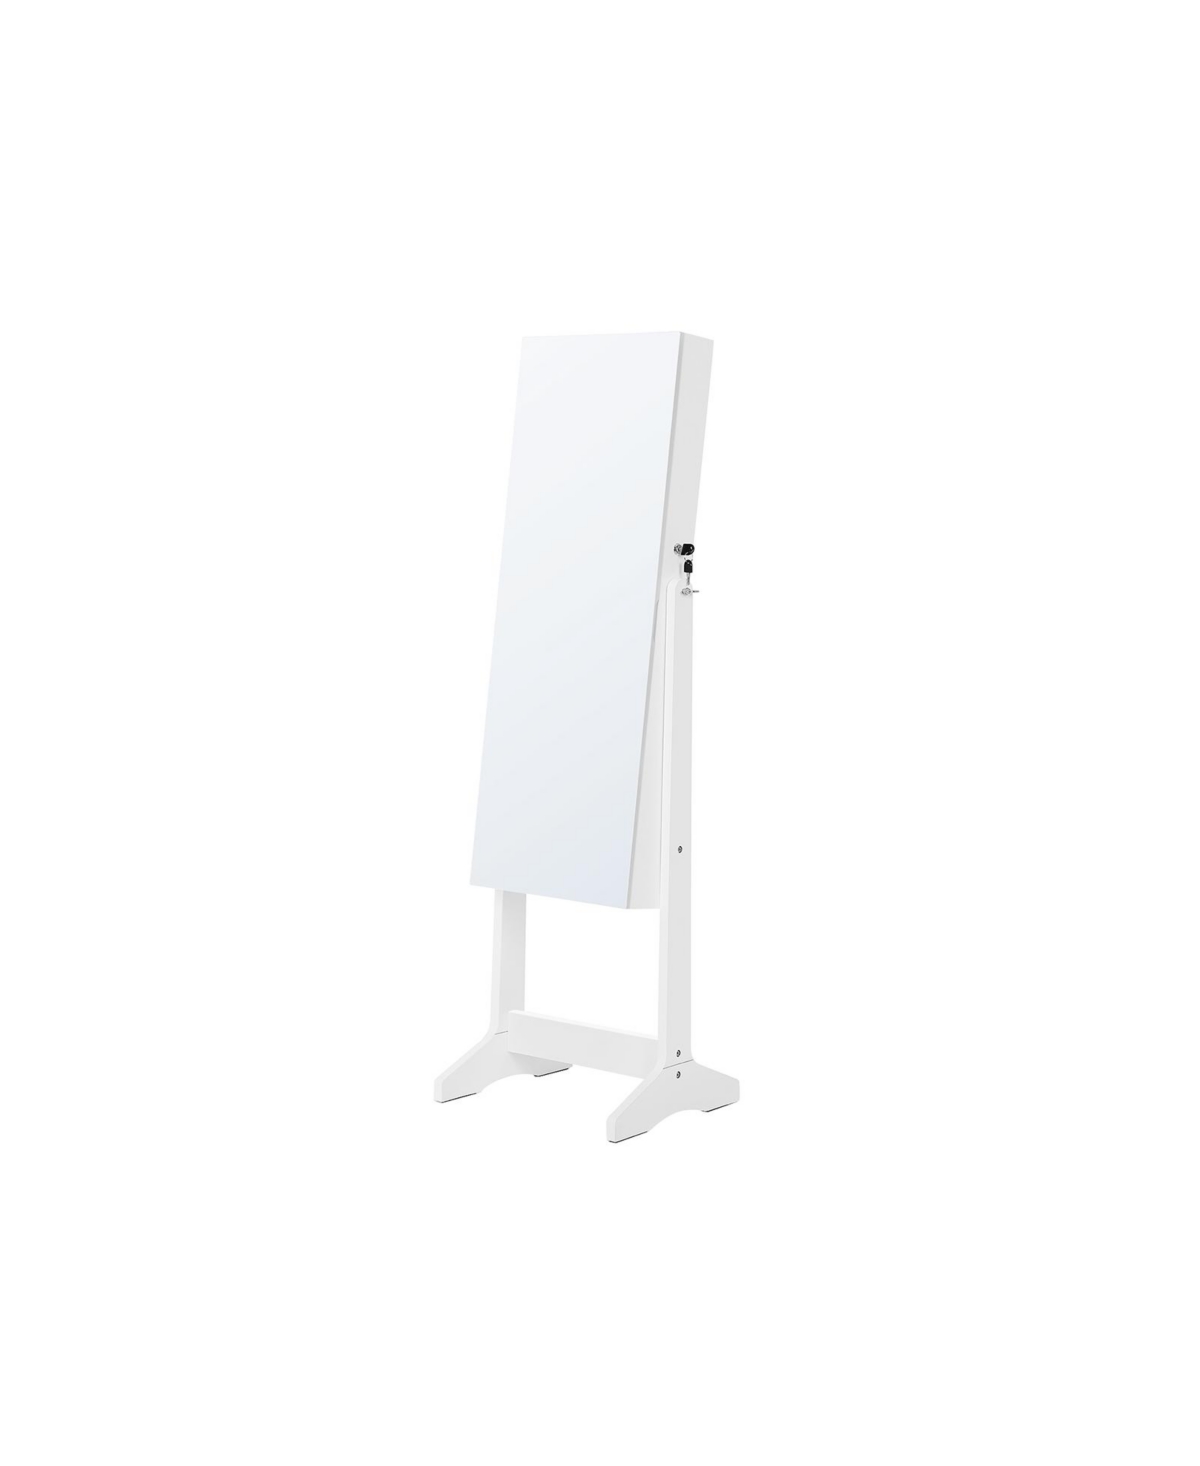 Mirror Jewelry Cabinet Armoire, Freestanding Lockable Storage Organizer Unit - White